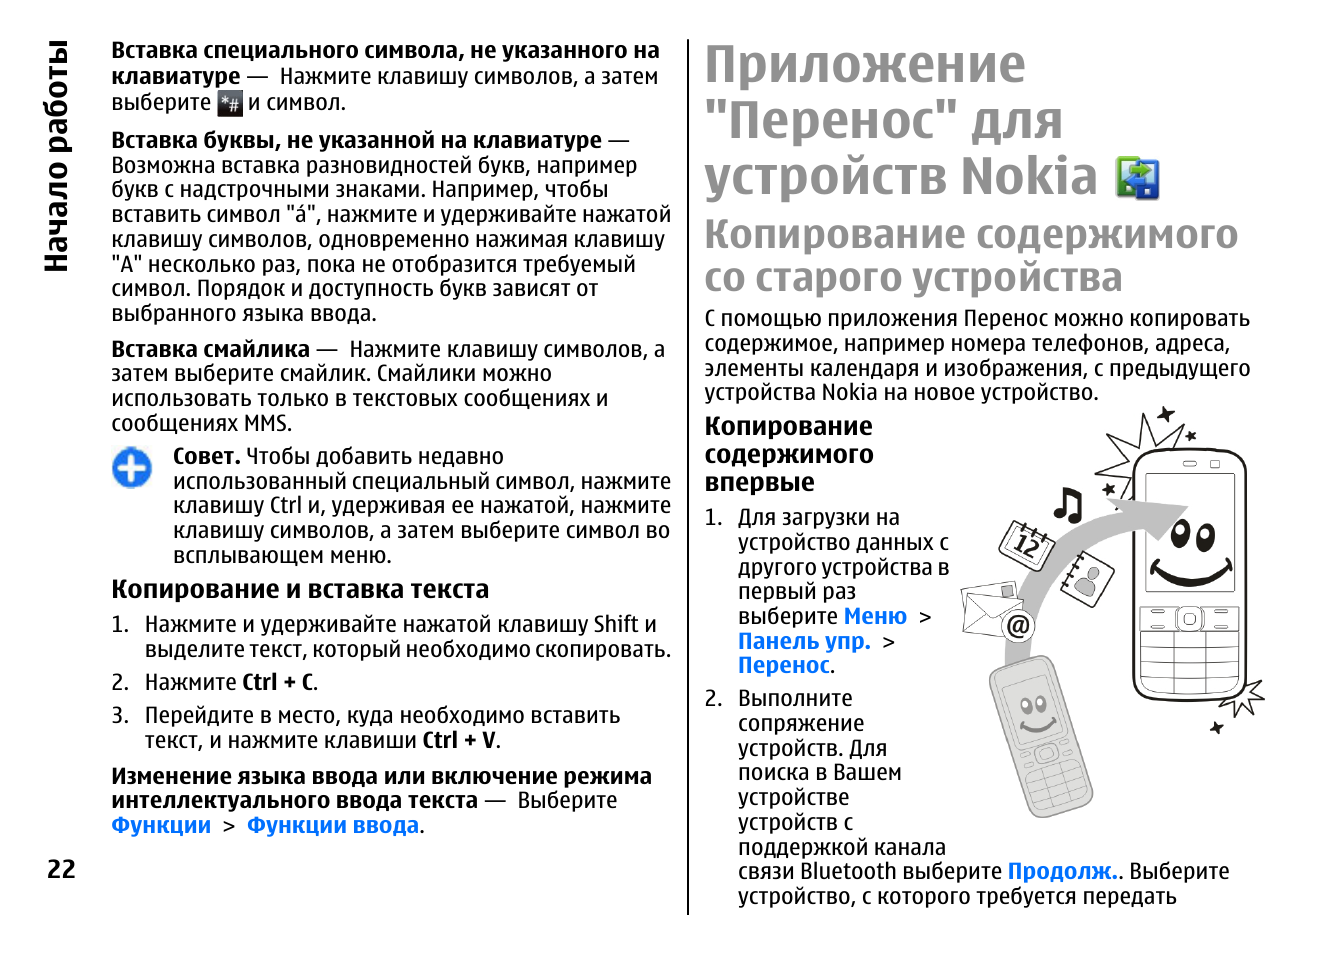 Нокиа 72 инструкция. Nokia e52 инструкция инверсию цвета. Nokia e72 TV инструкция по применению. Инструкция мобильного китайского кондиционера SAST 400-8878815. Приложение переноса данных со старого телефона